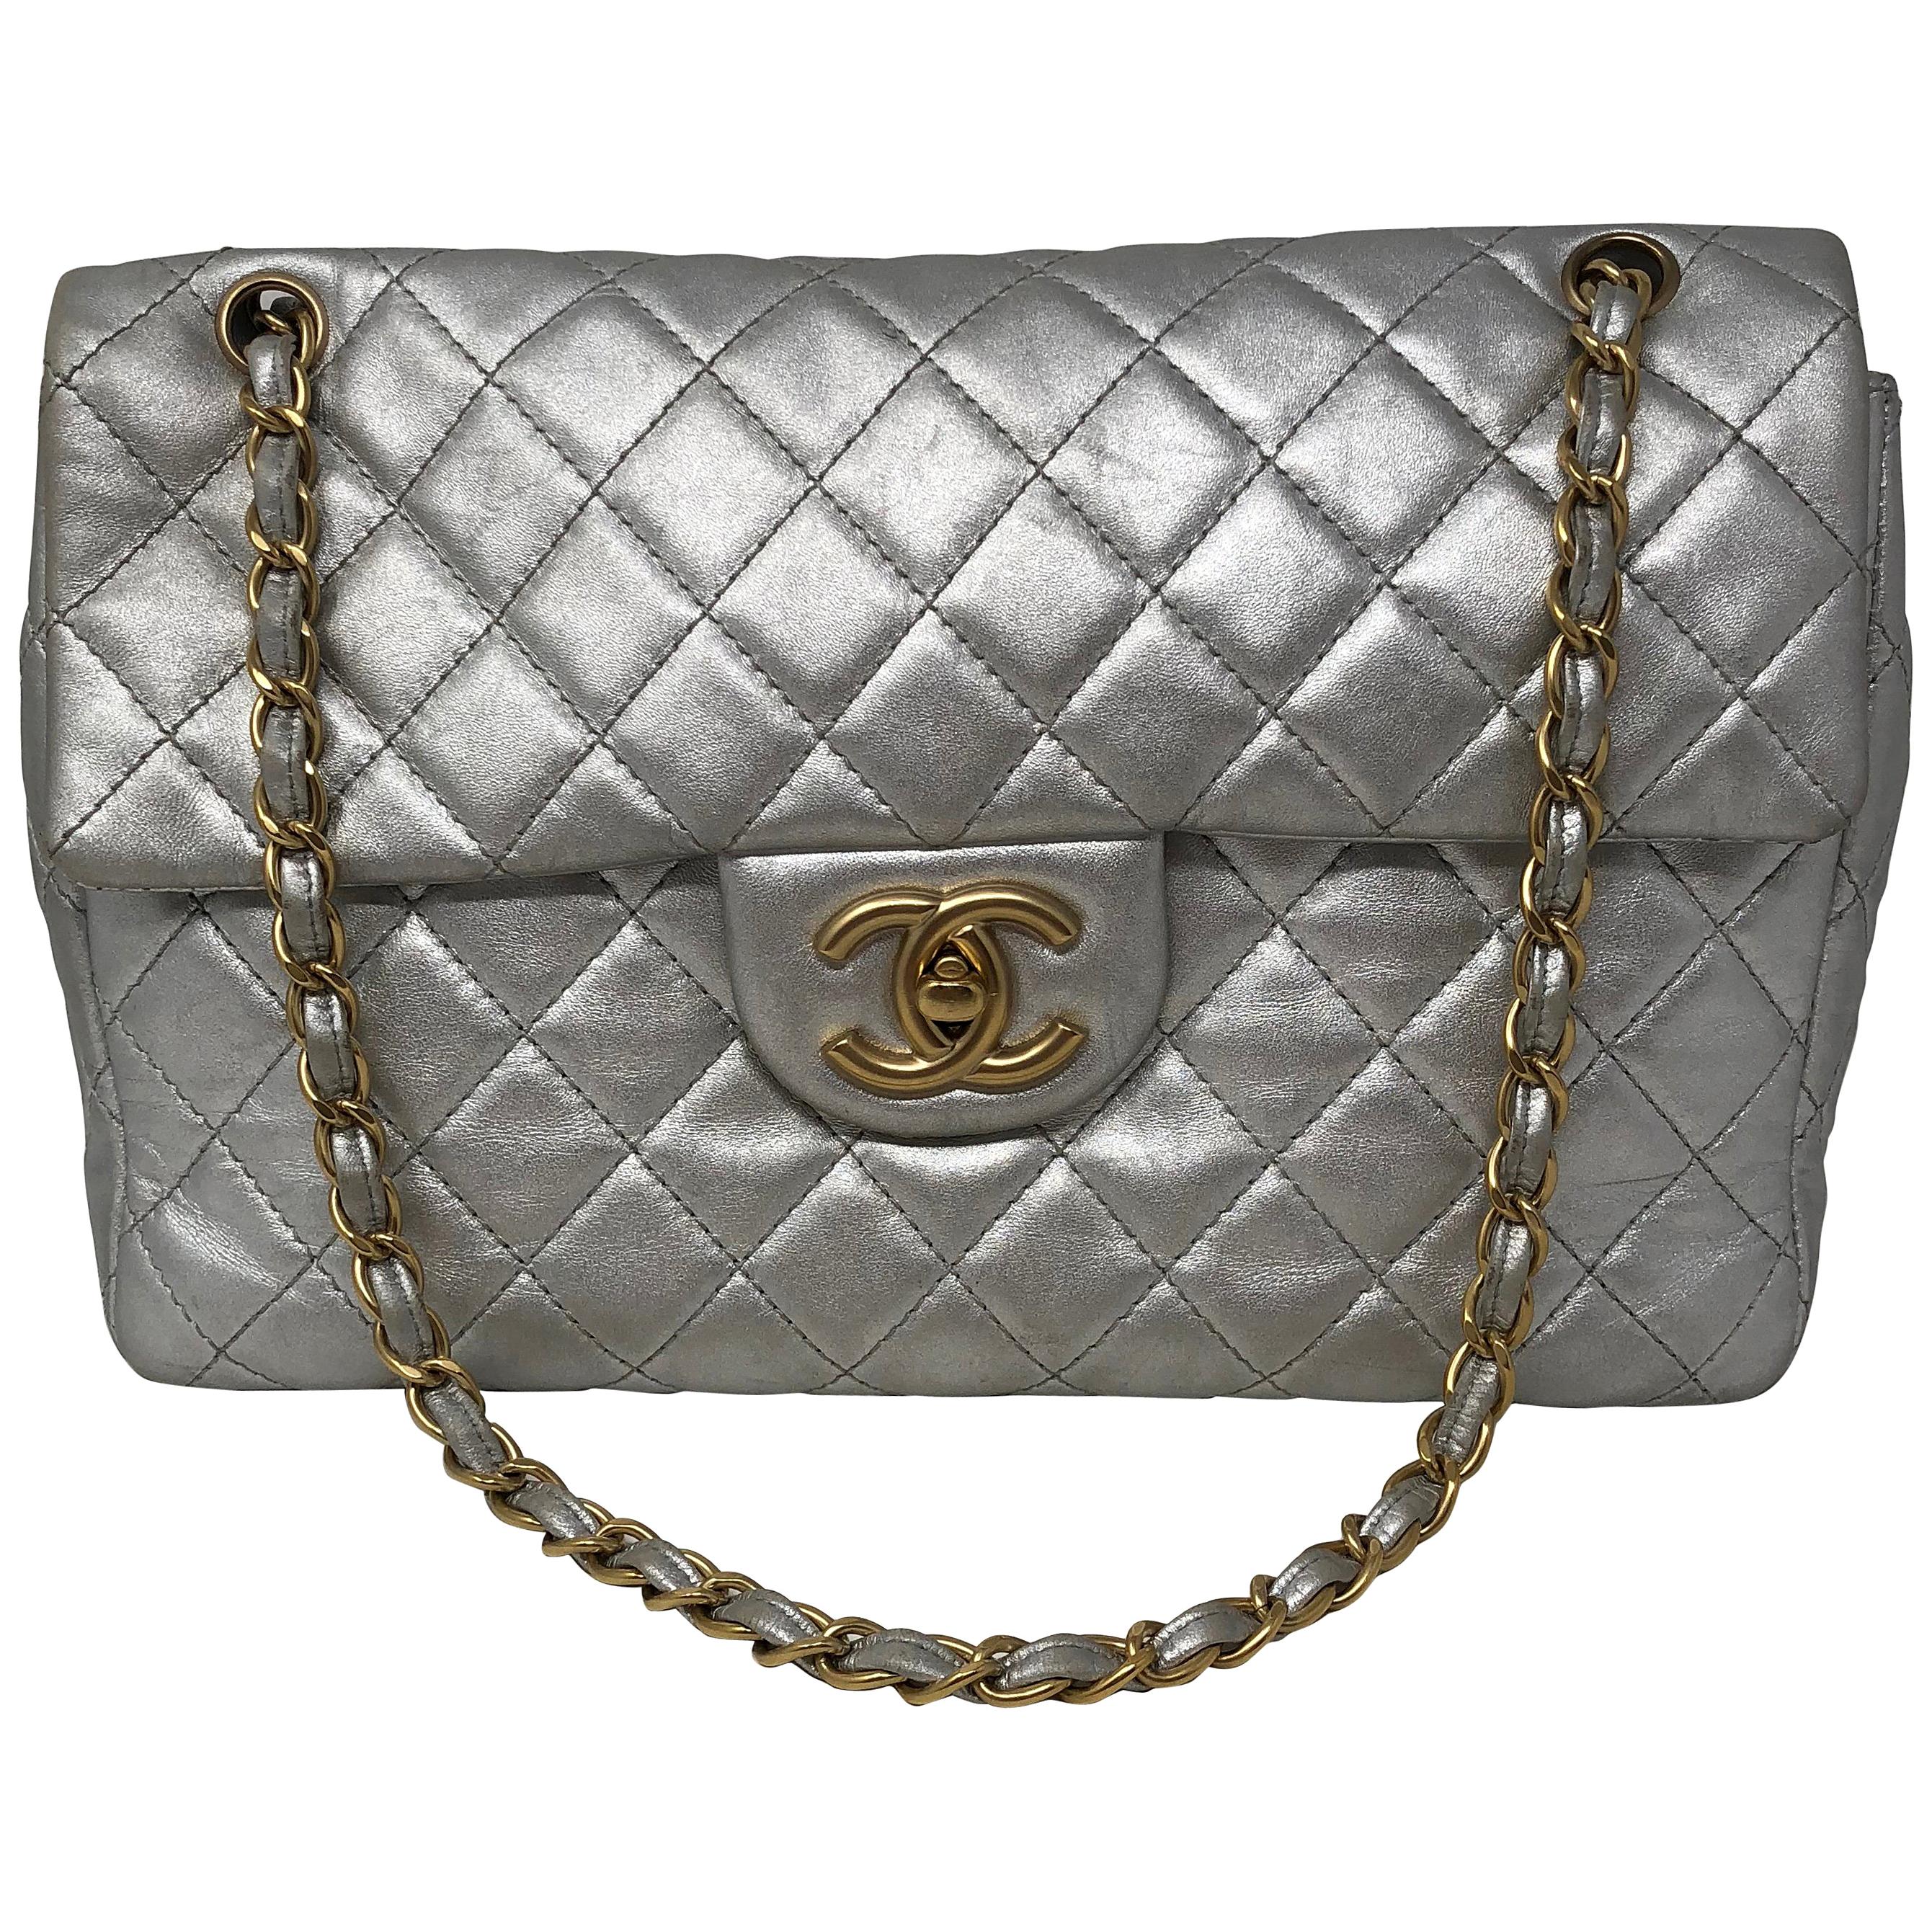 Chanel Silver Metallic Jumbo Bag